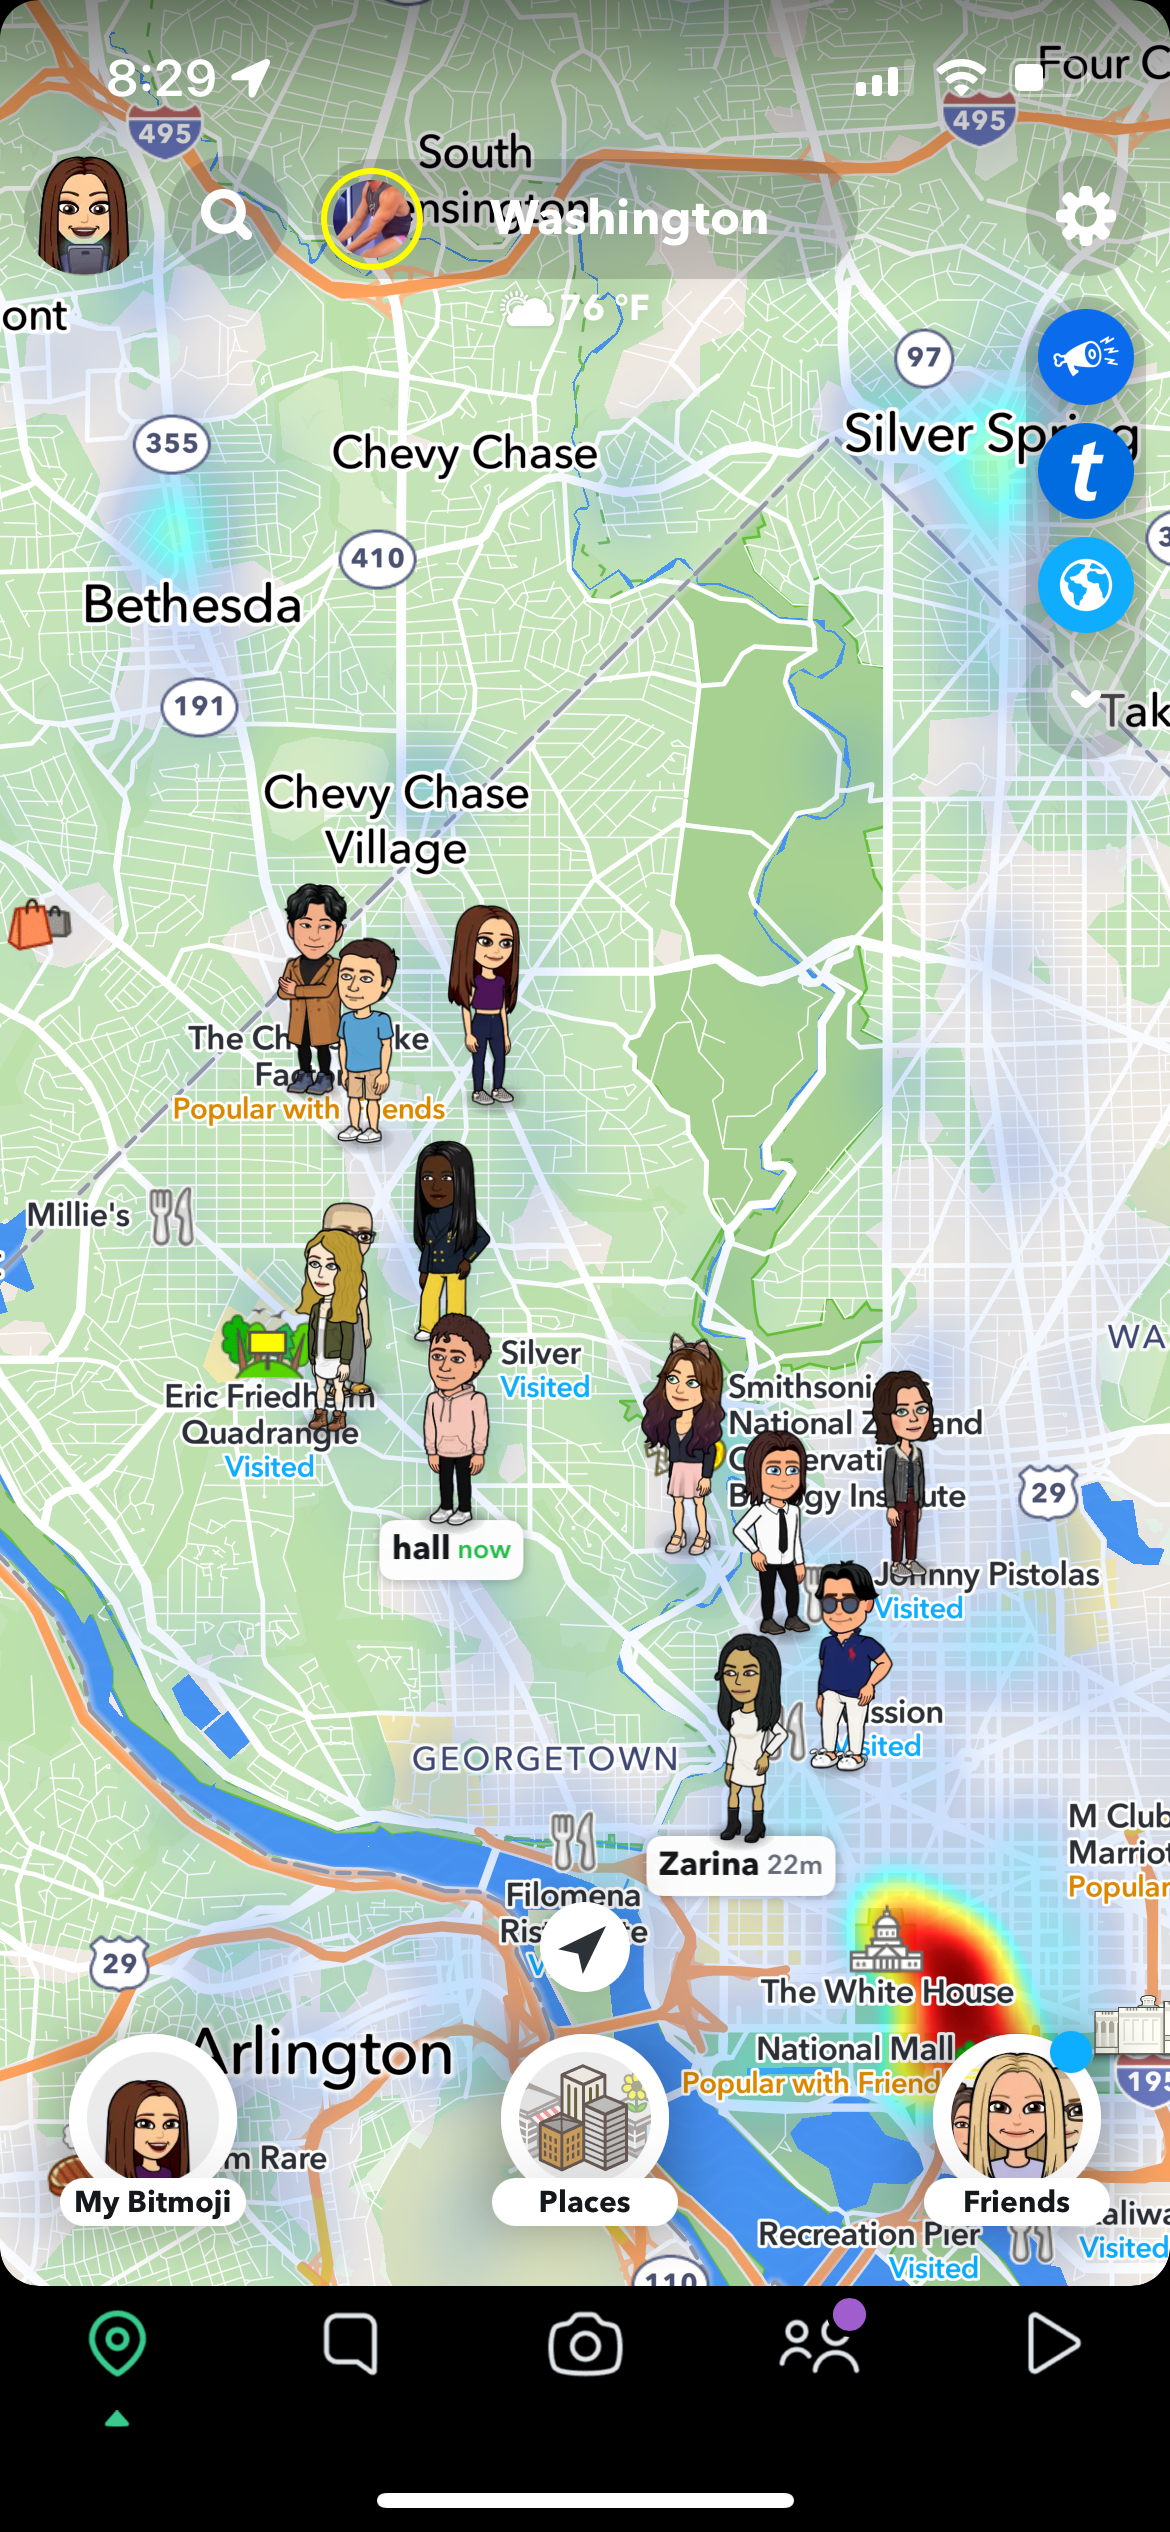 snapchat's snap map